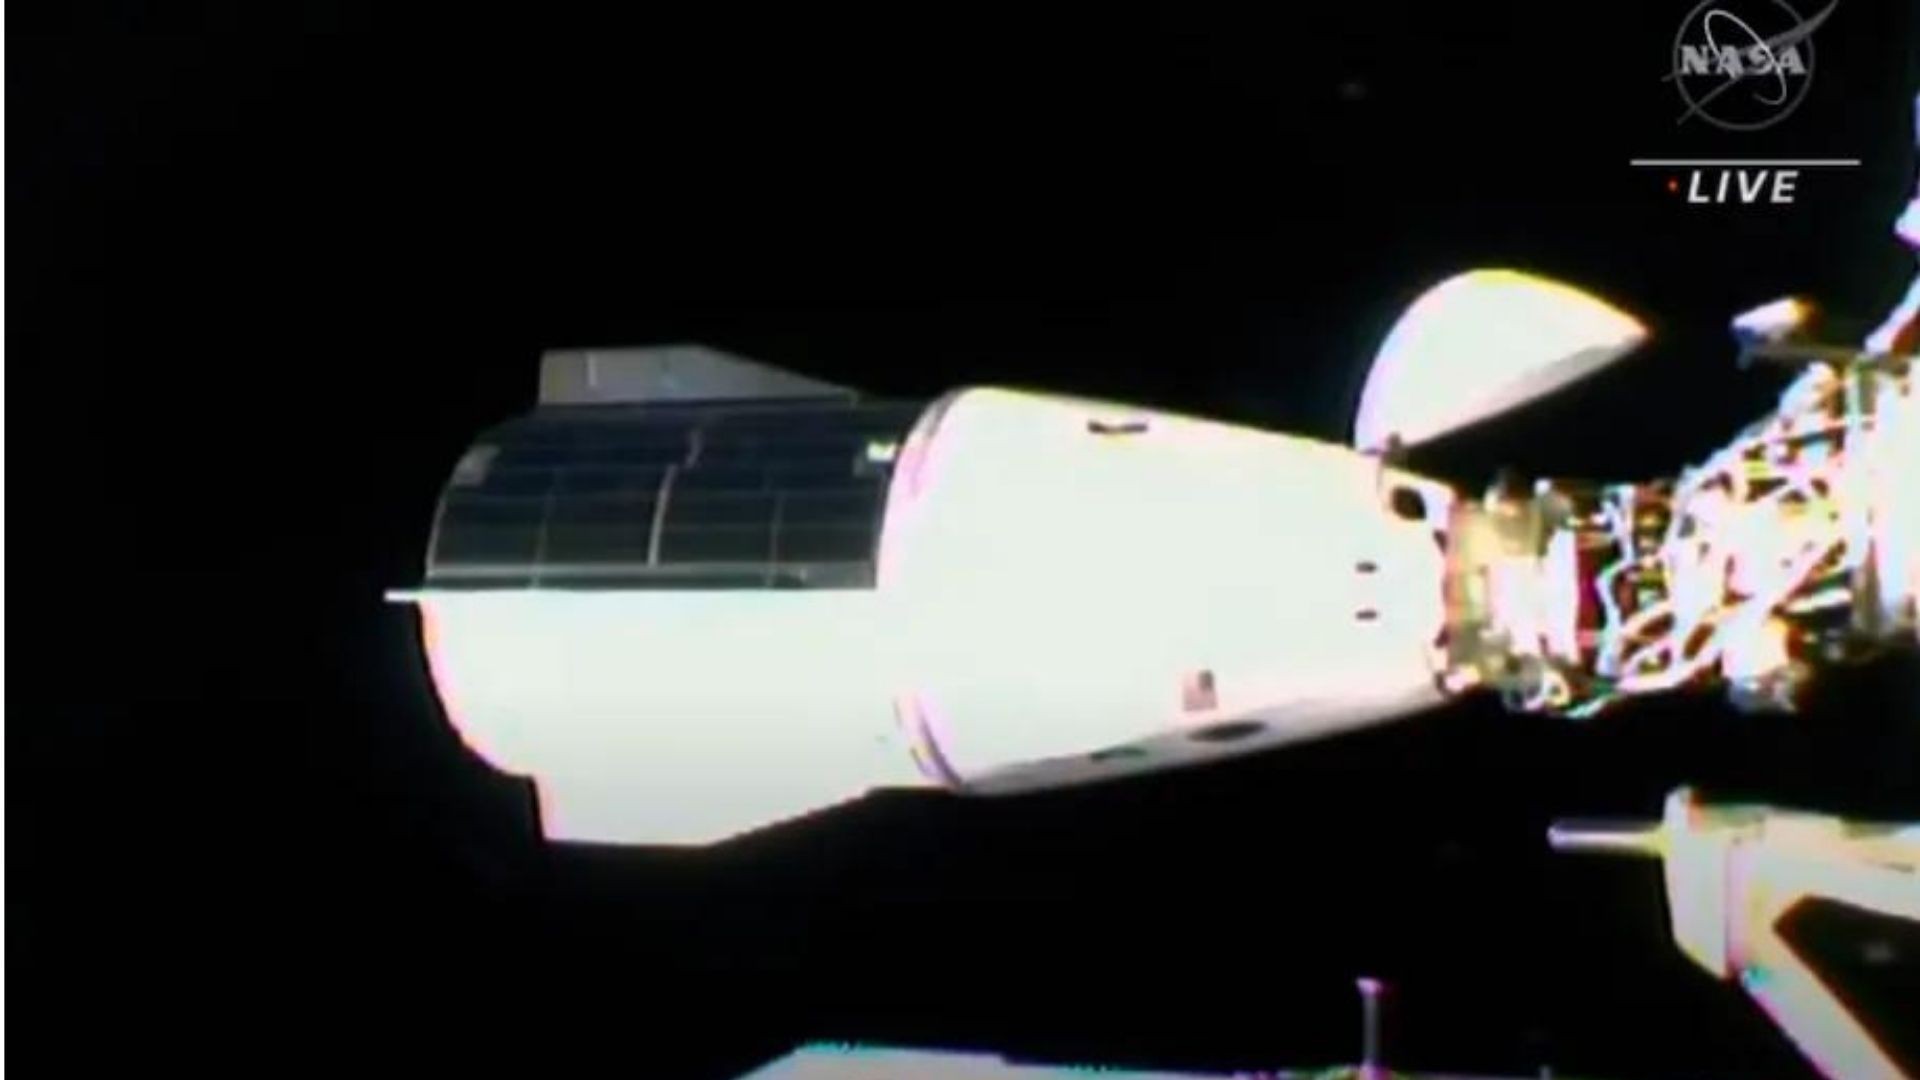 Cápsula SpaceX Dragon atracando na Estação Espacial Internacional (Foto: Nasa)